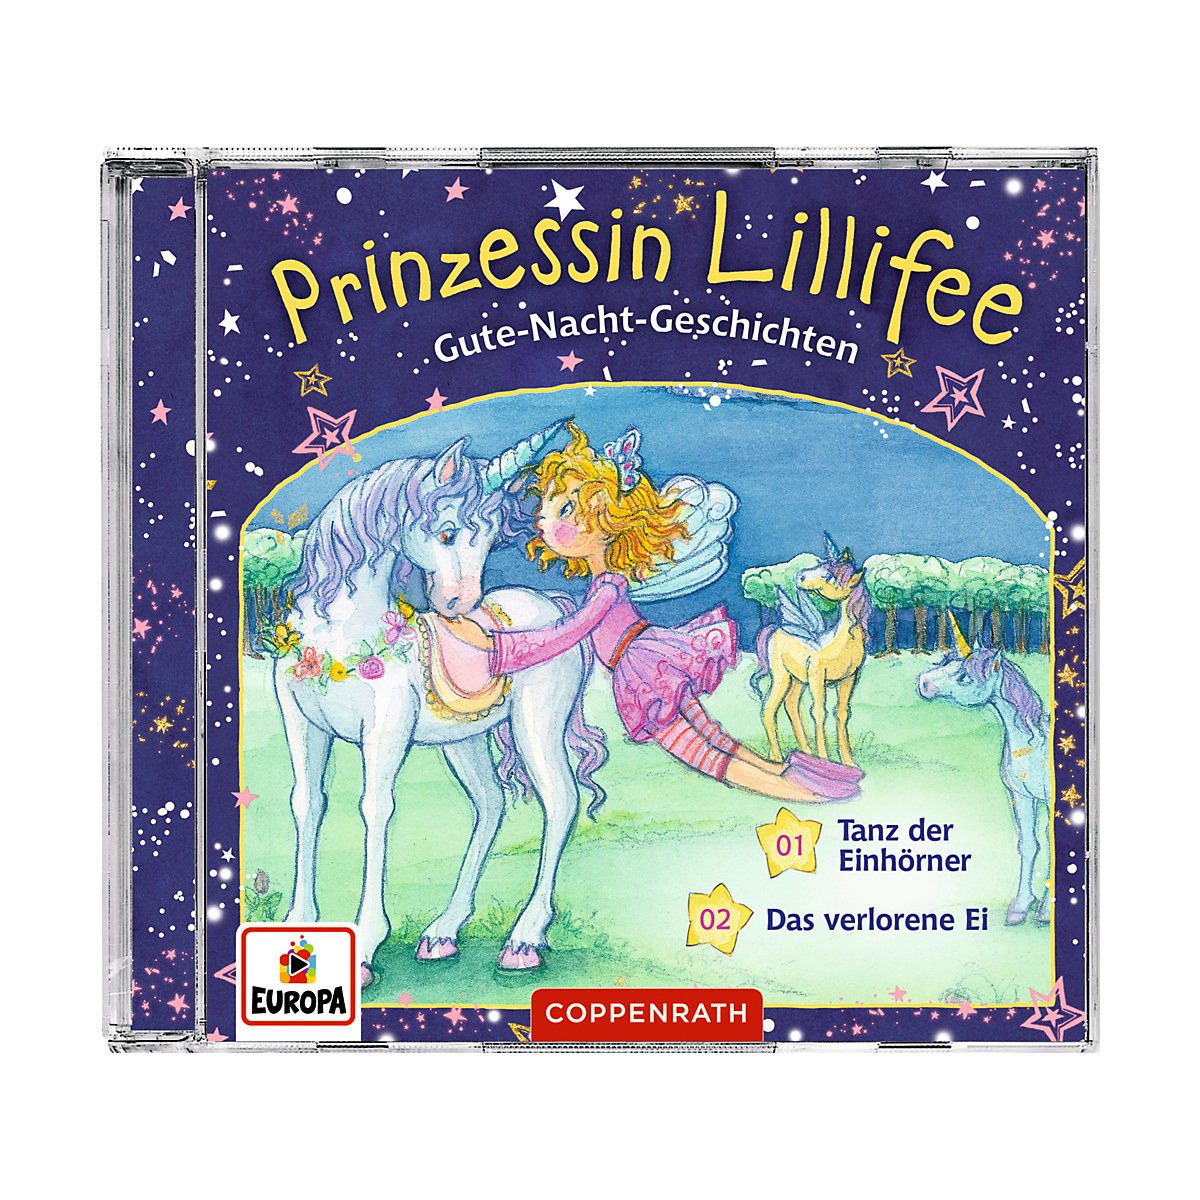 CD Gute-Nacht-Geschichten mit Prinzessin Lillifee 2